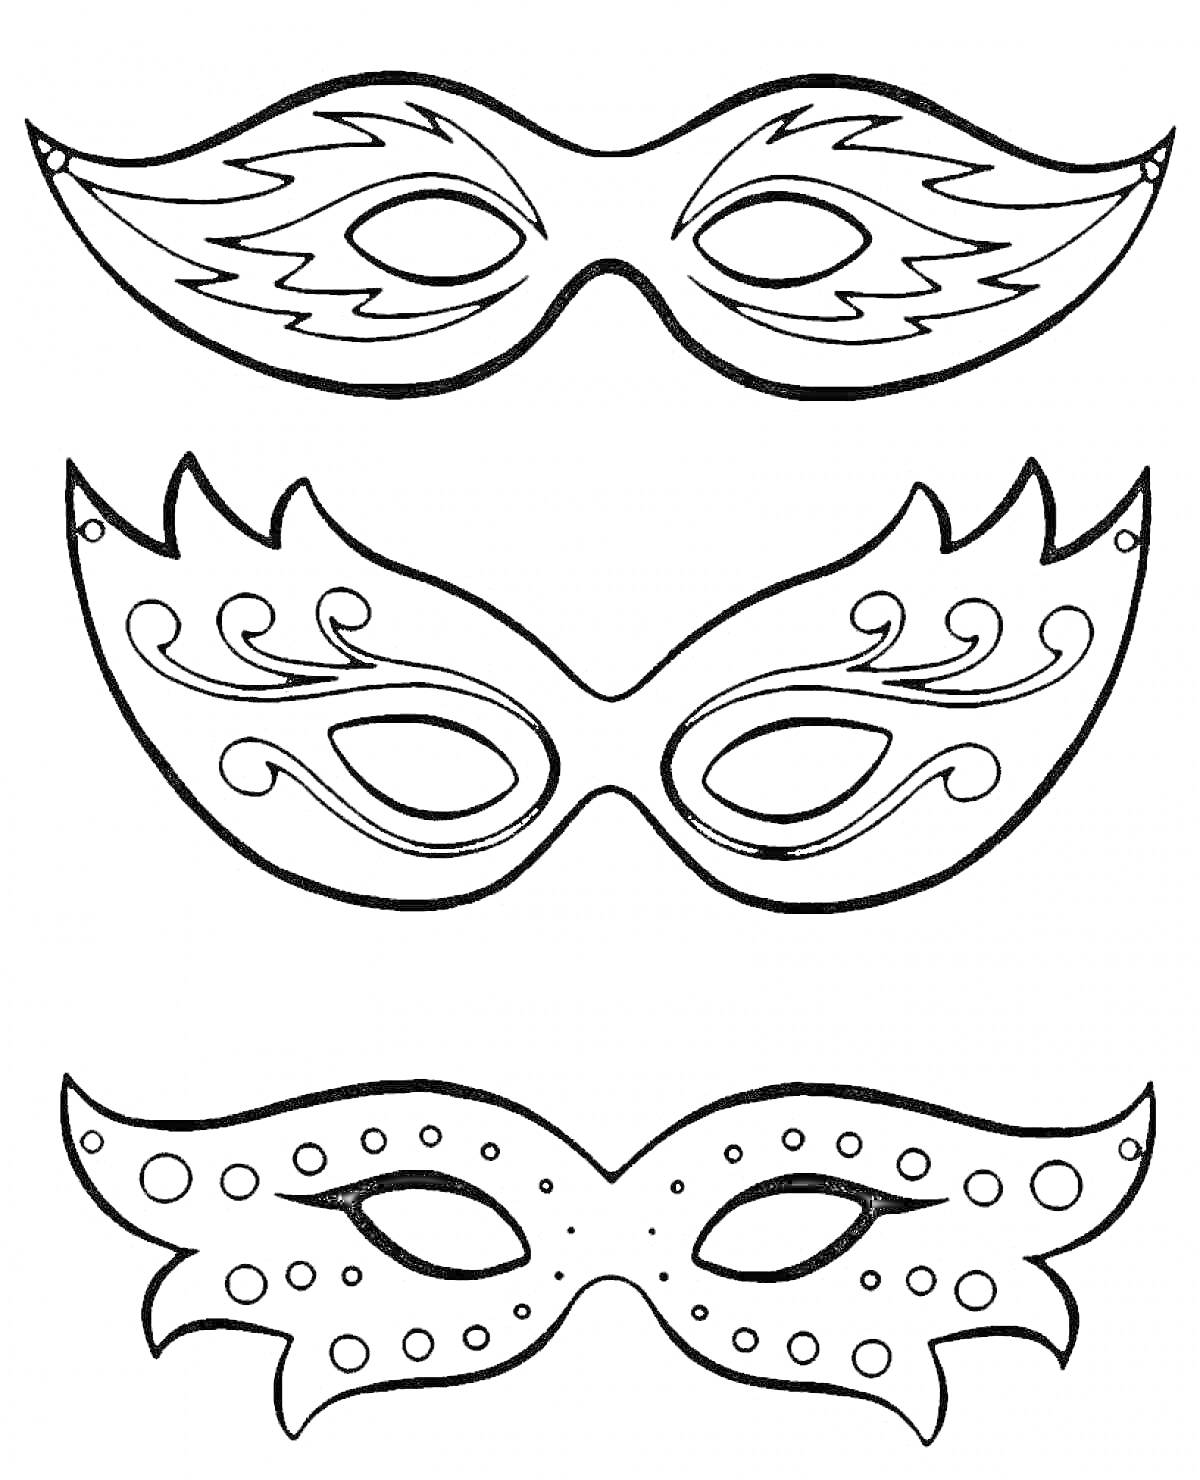 Три новогодние маски с различными декоративными элементами (волнистые линии, скрученные завитки, круглые точки)